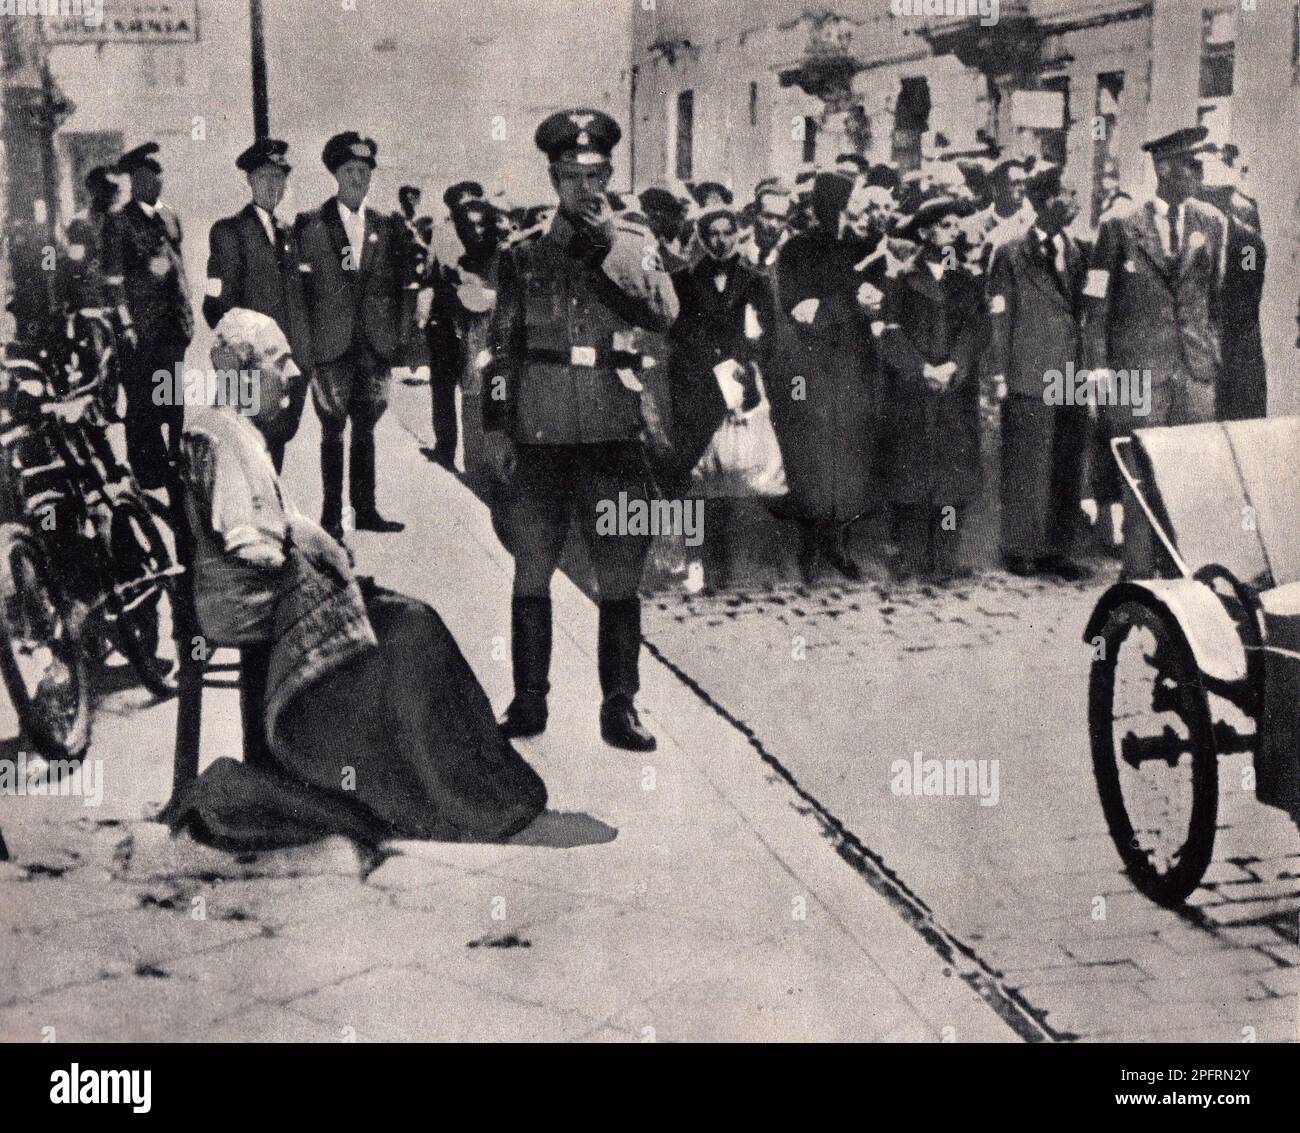 En janvier 1943, les nazis sont arrivés pour arrondir les Juifs du ghetto de Varsovie les Juifs, résolus au combattre, ont pris la SS avec des armes maison et primitives. Les défenseurs ont été exécutés ou déportés et la zone du ghetto a été systématiquement démolie. Cet événement est connu sous le nom de soulèvement du ghetto. Cette image montre un groupe de Juifs et un vieil homme assis sur une chaise attendant d'être déportés à leur mort Banque D'Images